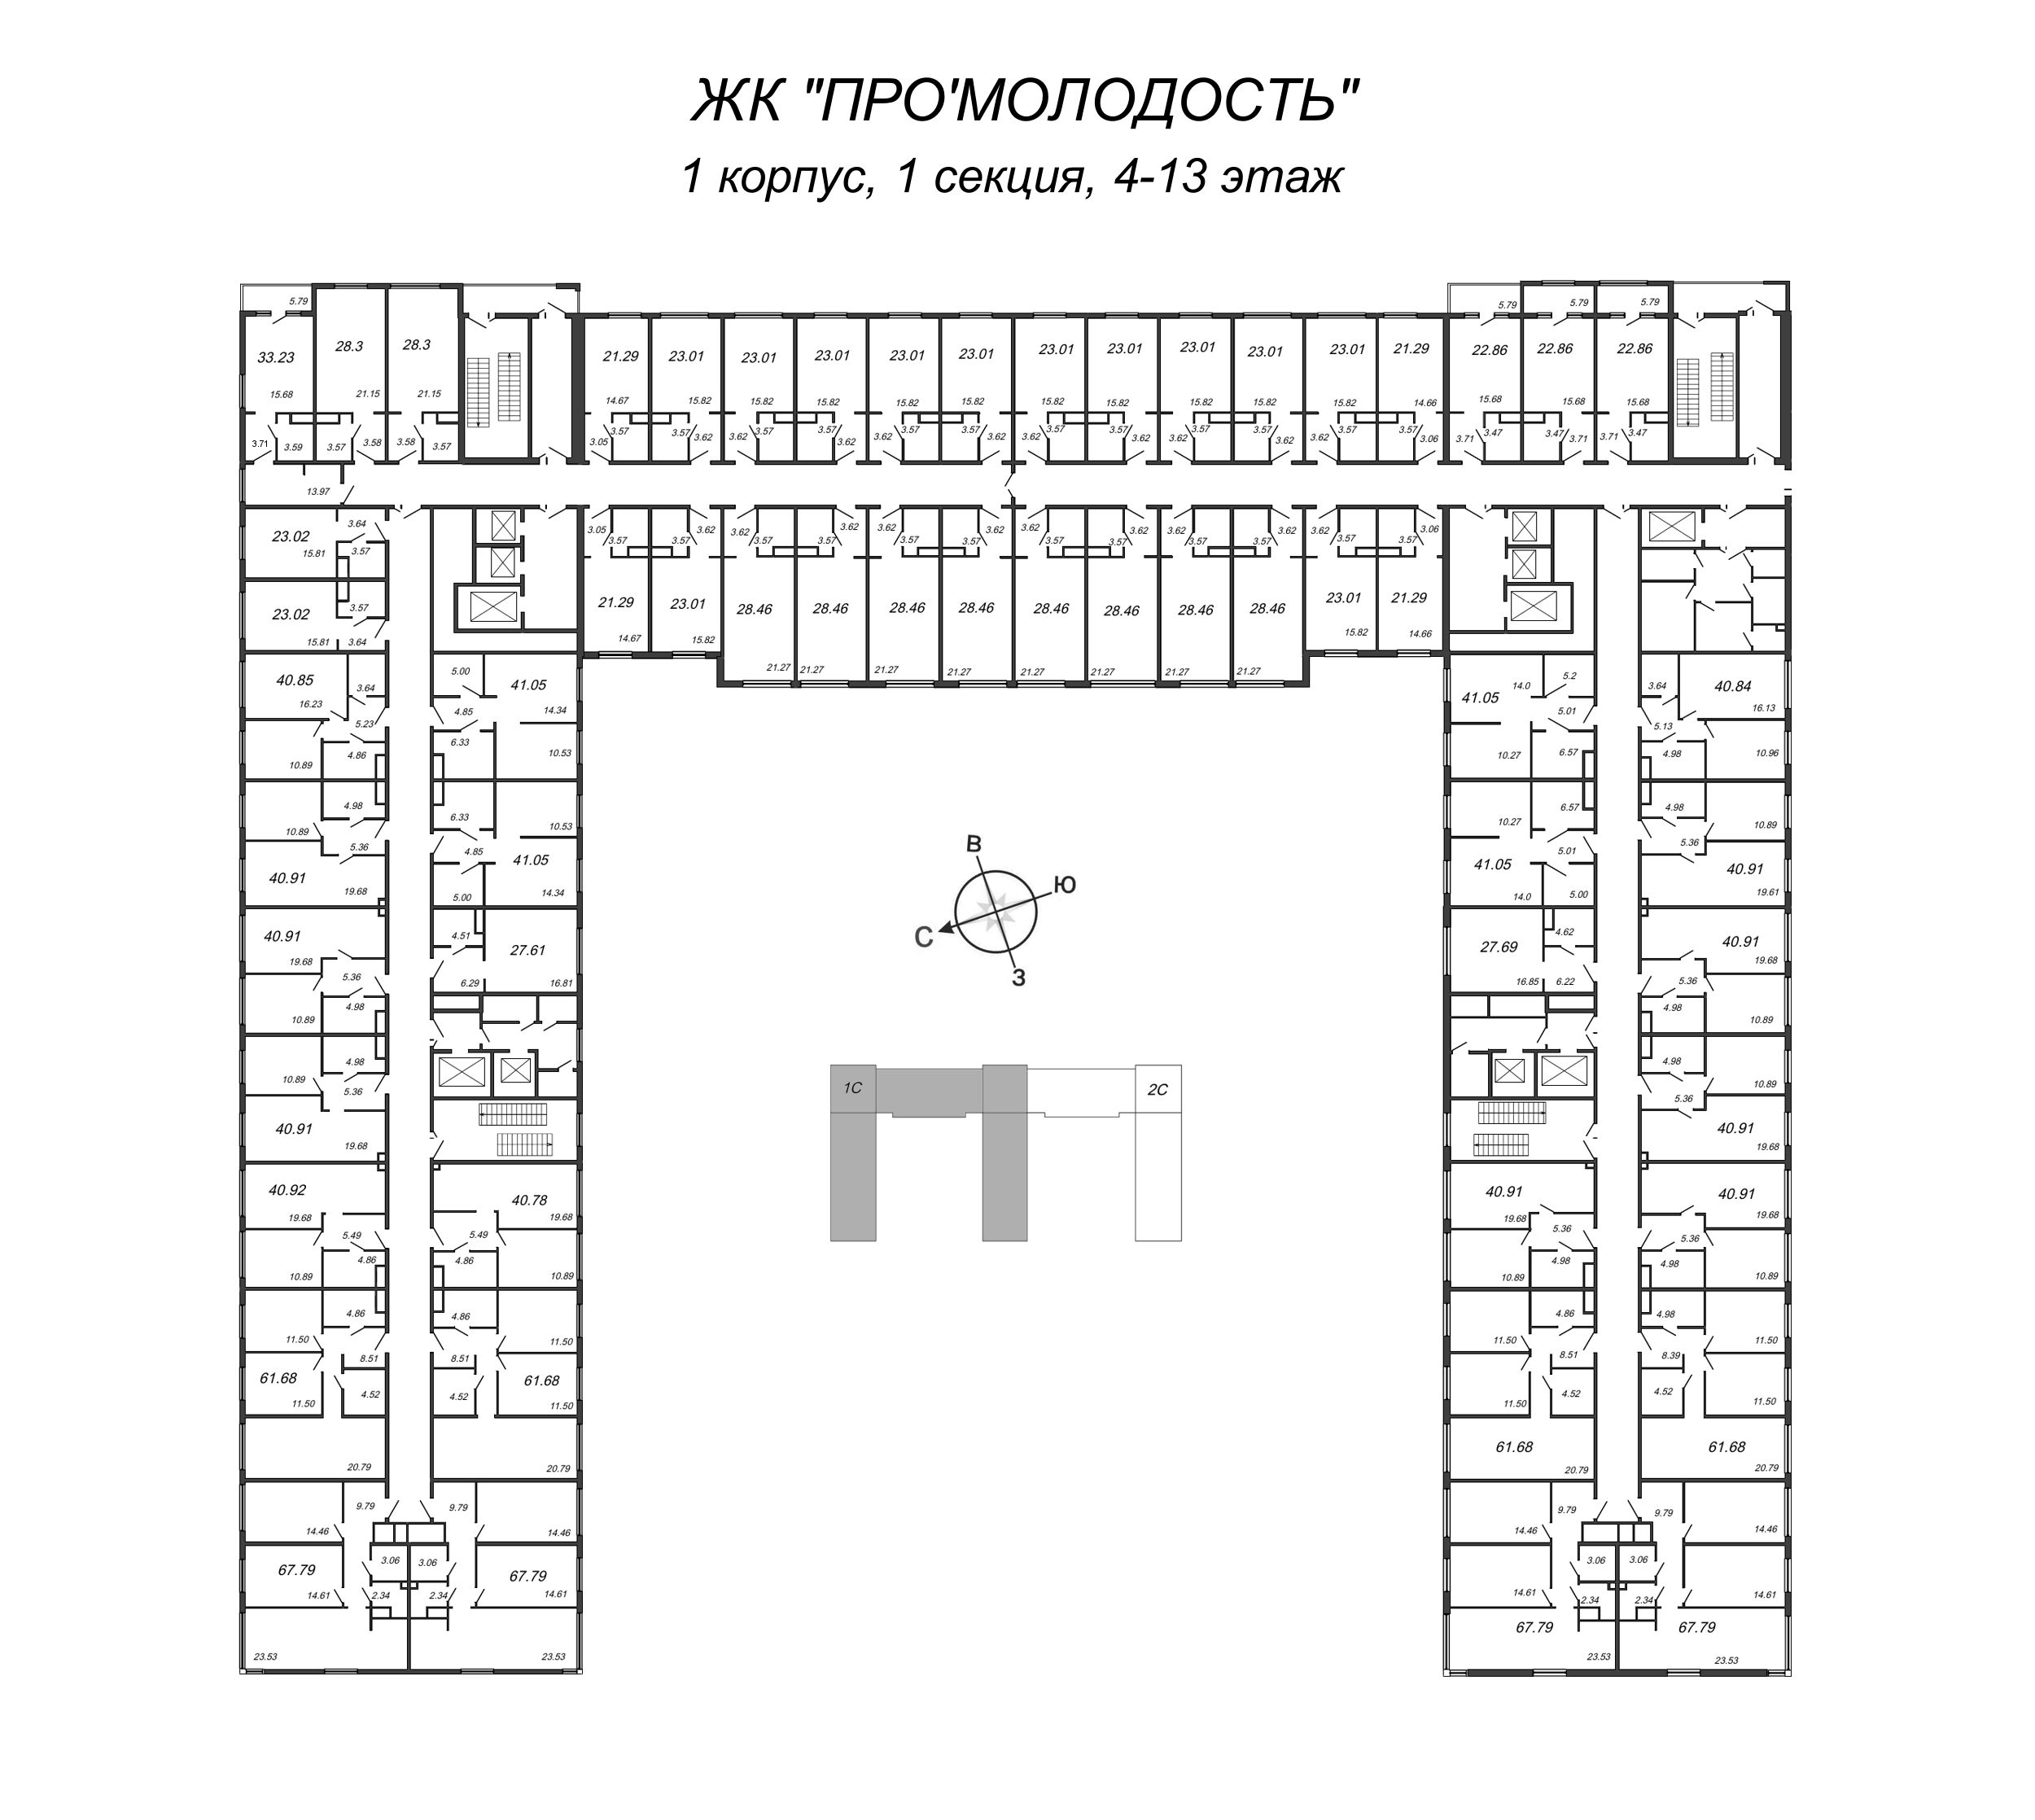 Квартира-студия, 23.01 м² в ЖК "ПРО'МОЛОDОСТЬ" - планировка этажа